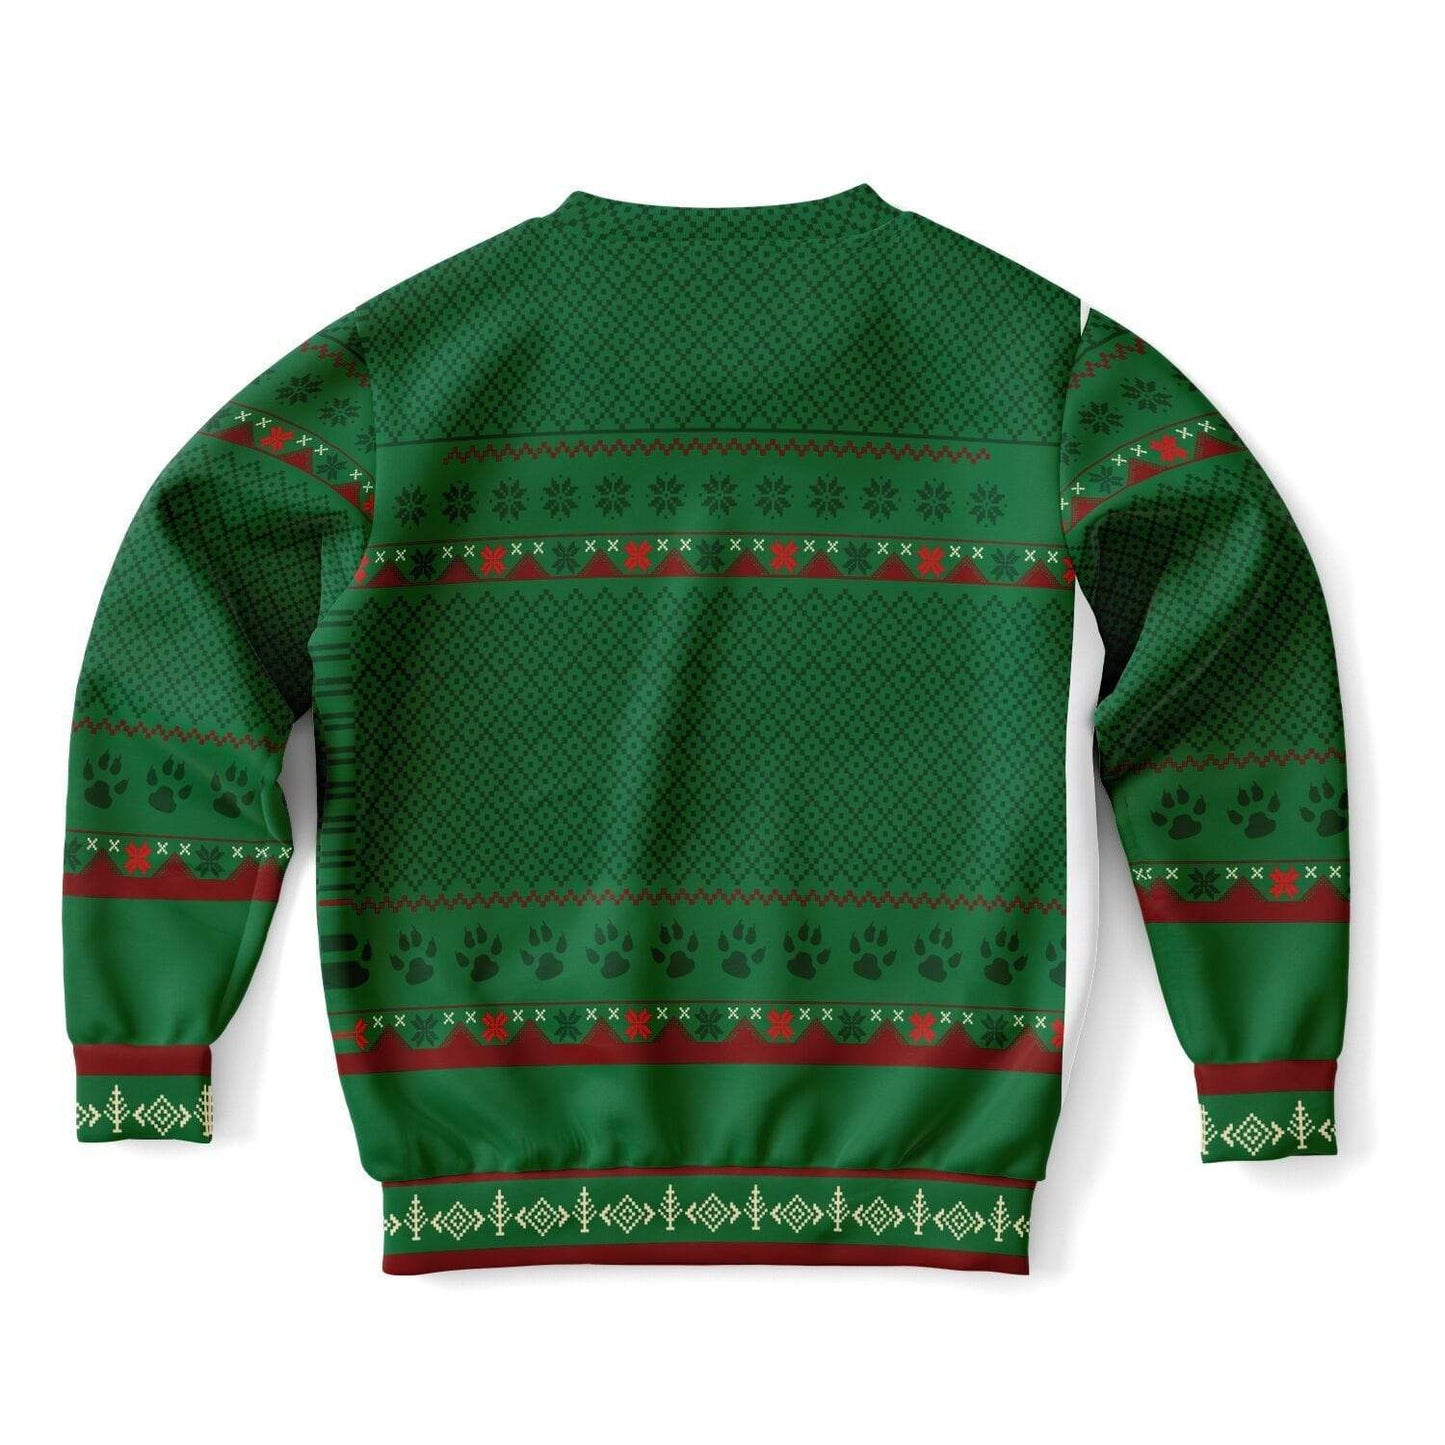 Feliz Navidog - Funny Kids/Youth Dog Lover Ugly Christmas Sweater (Sweatshirt)